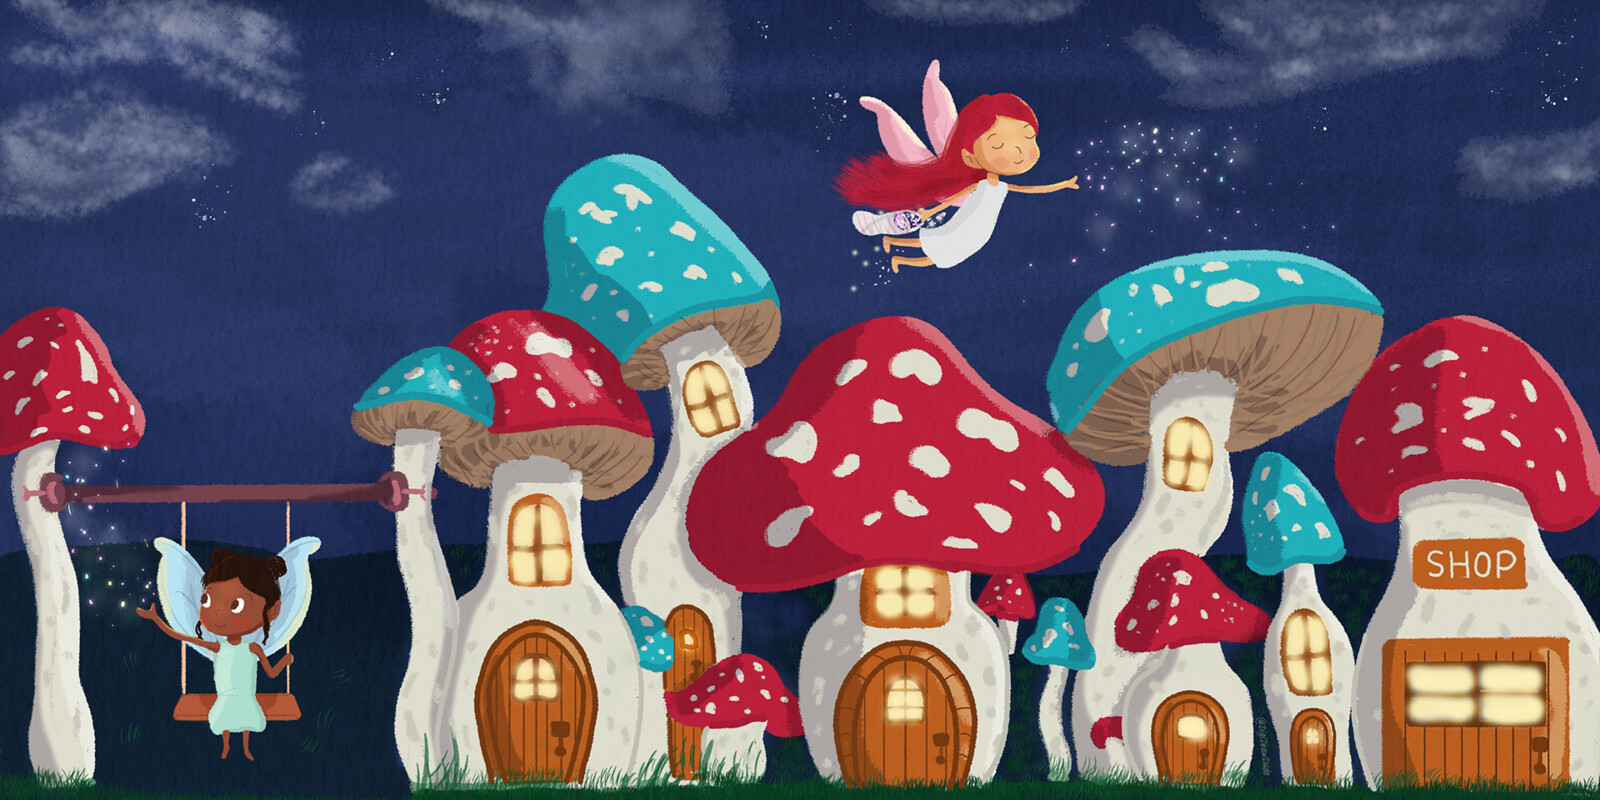 Fairy Mushroom Kingdom